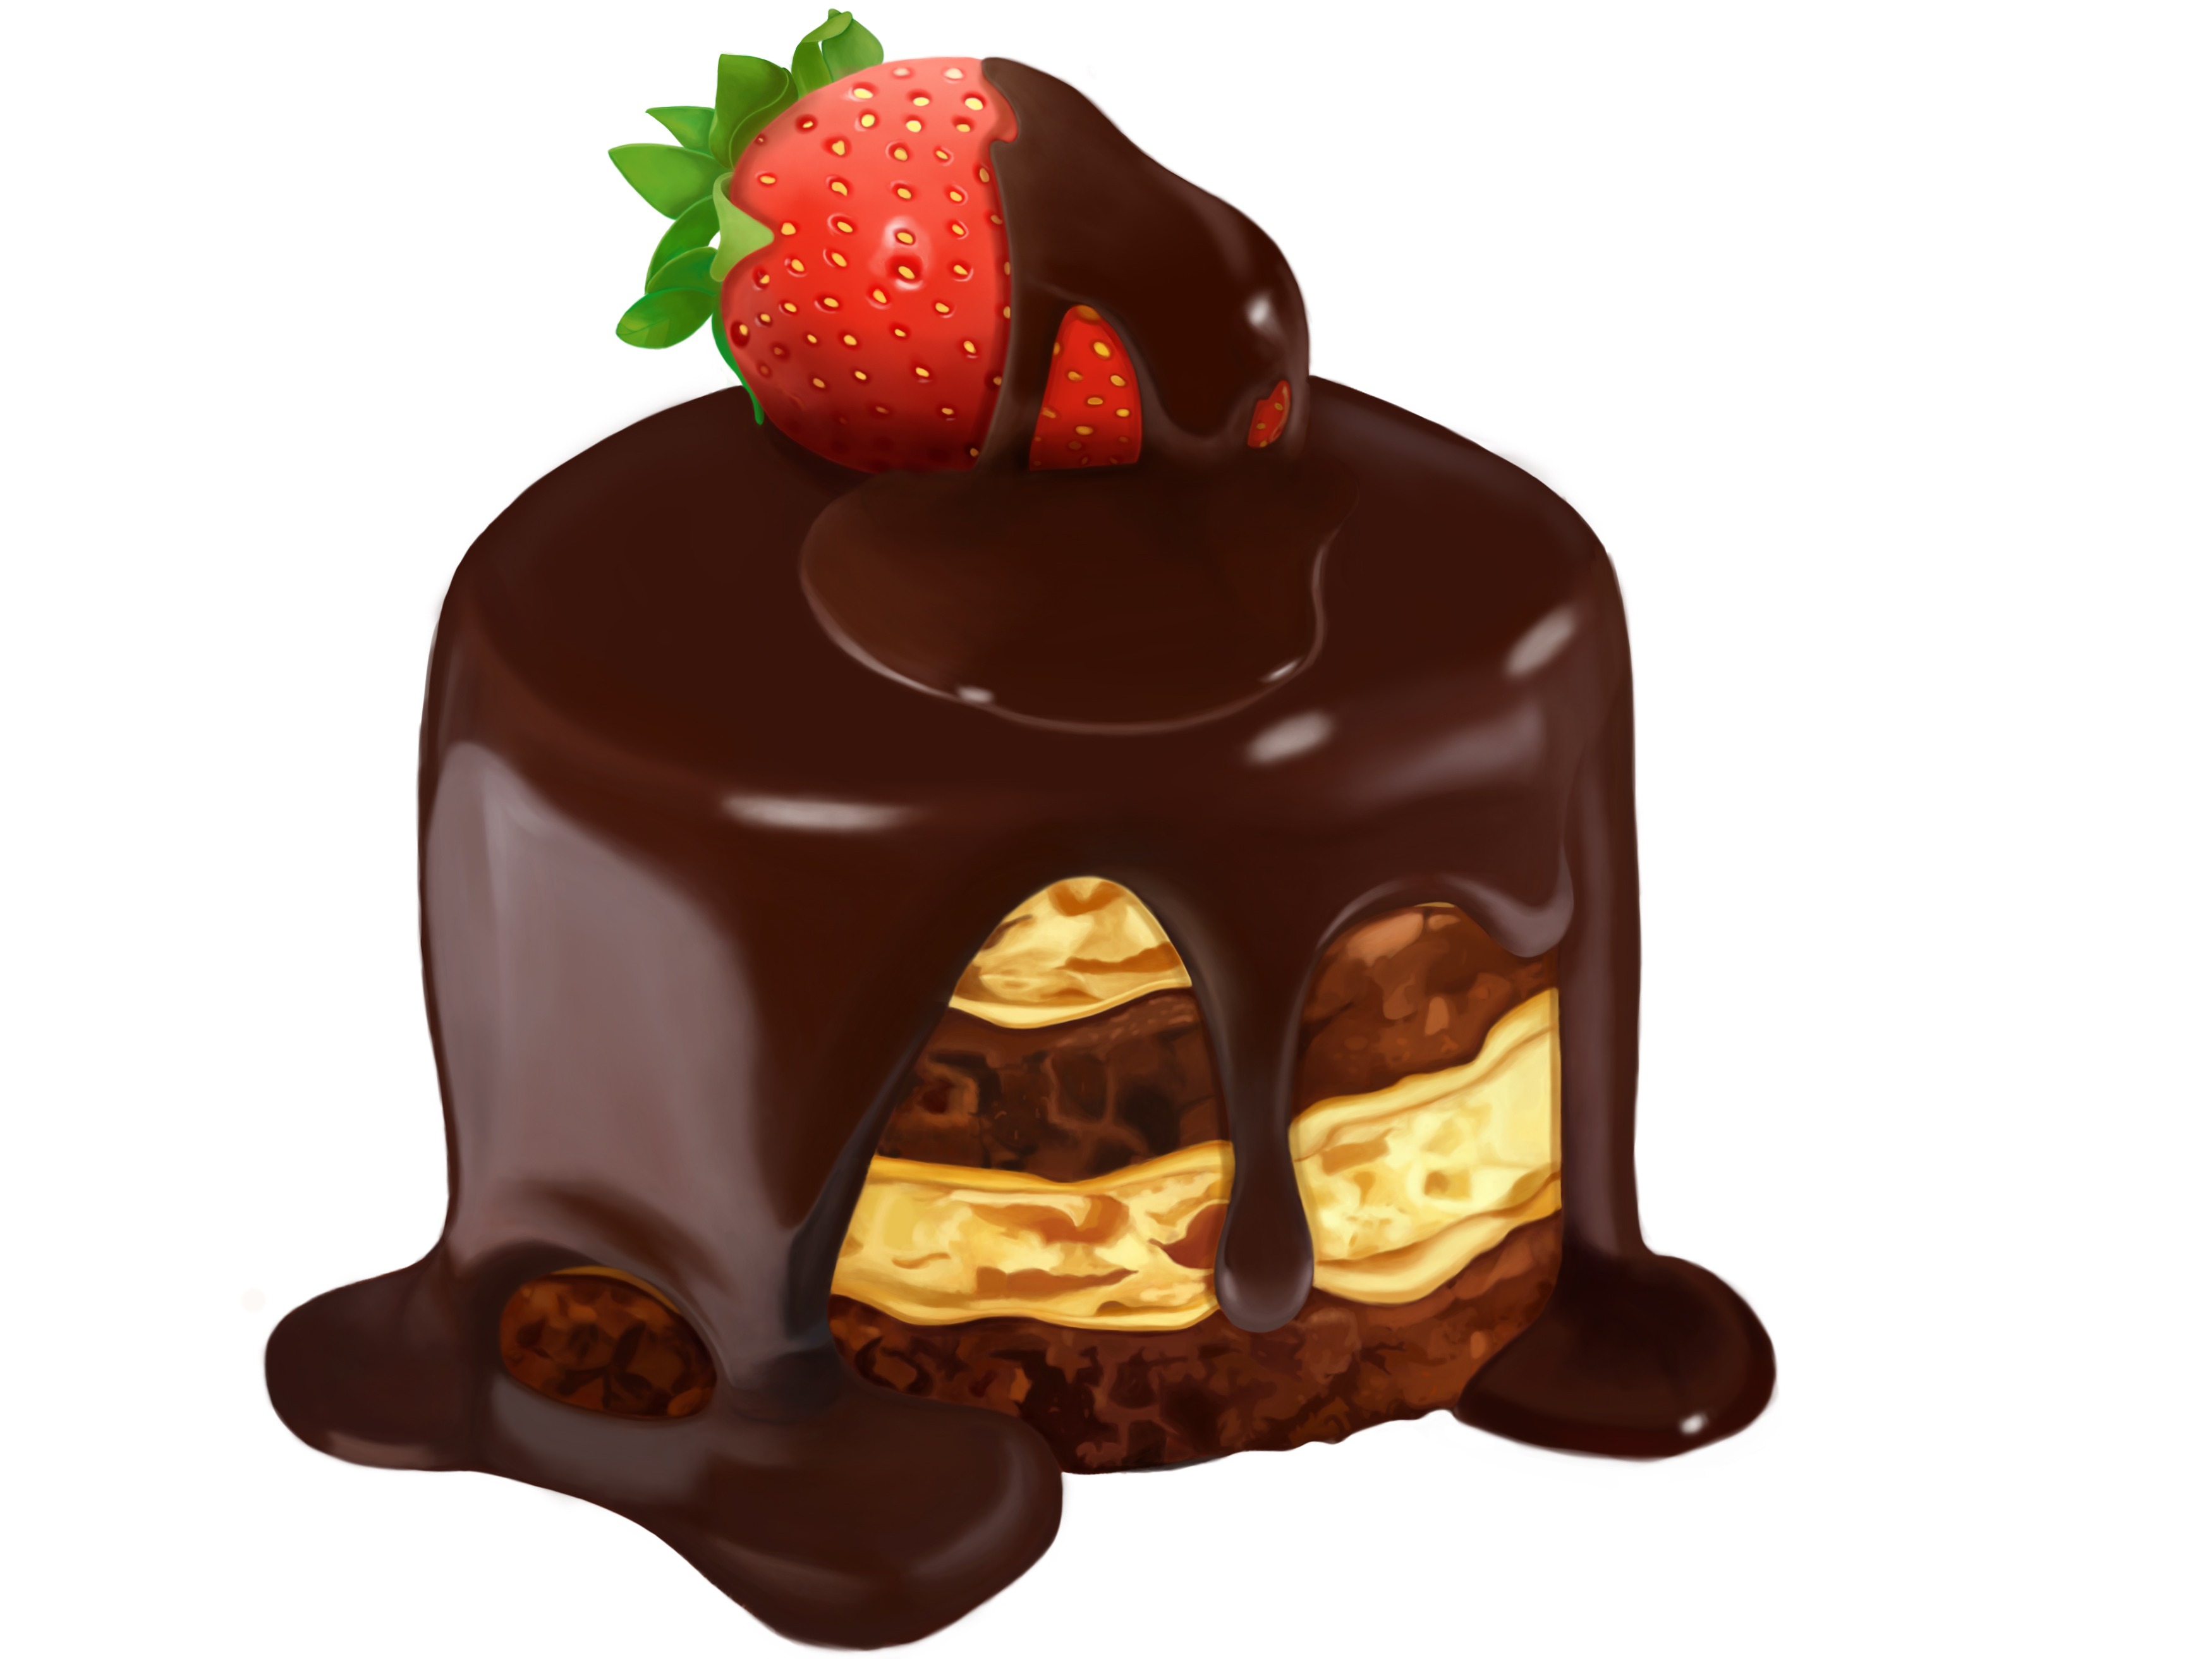 棒棒糖巧克力蛋糕家庭版的做法_【图解】棒棒糖巧克力蛋糕家庭版怎么做如何做好吃_棒棒糖巧克力蛋糕家庭版家常做法大全_奇*^O^*_豆果美食